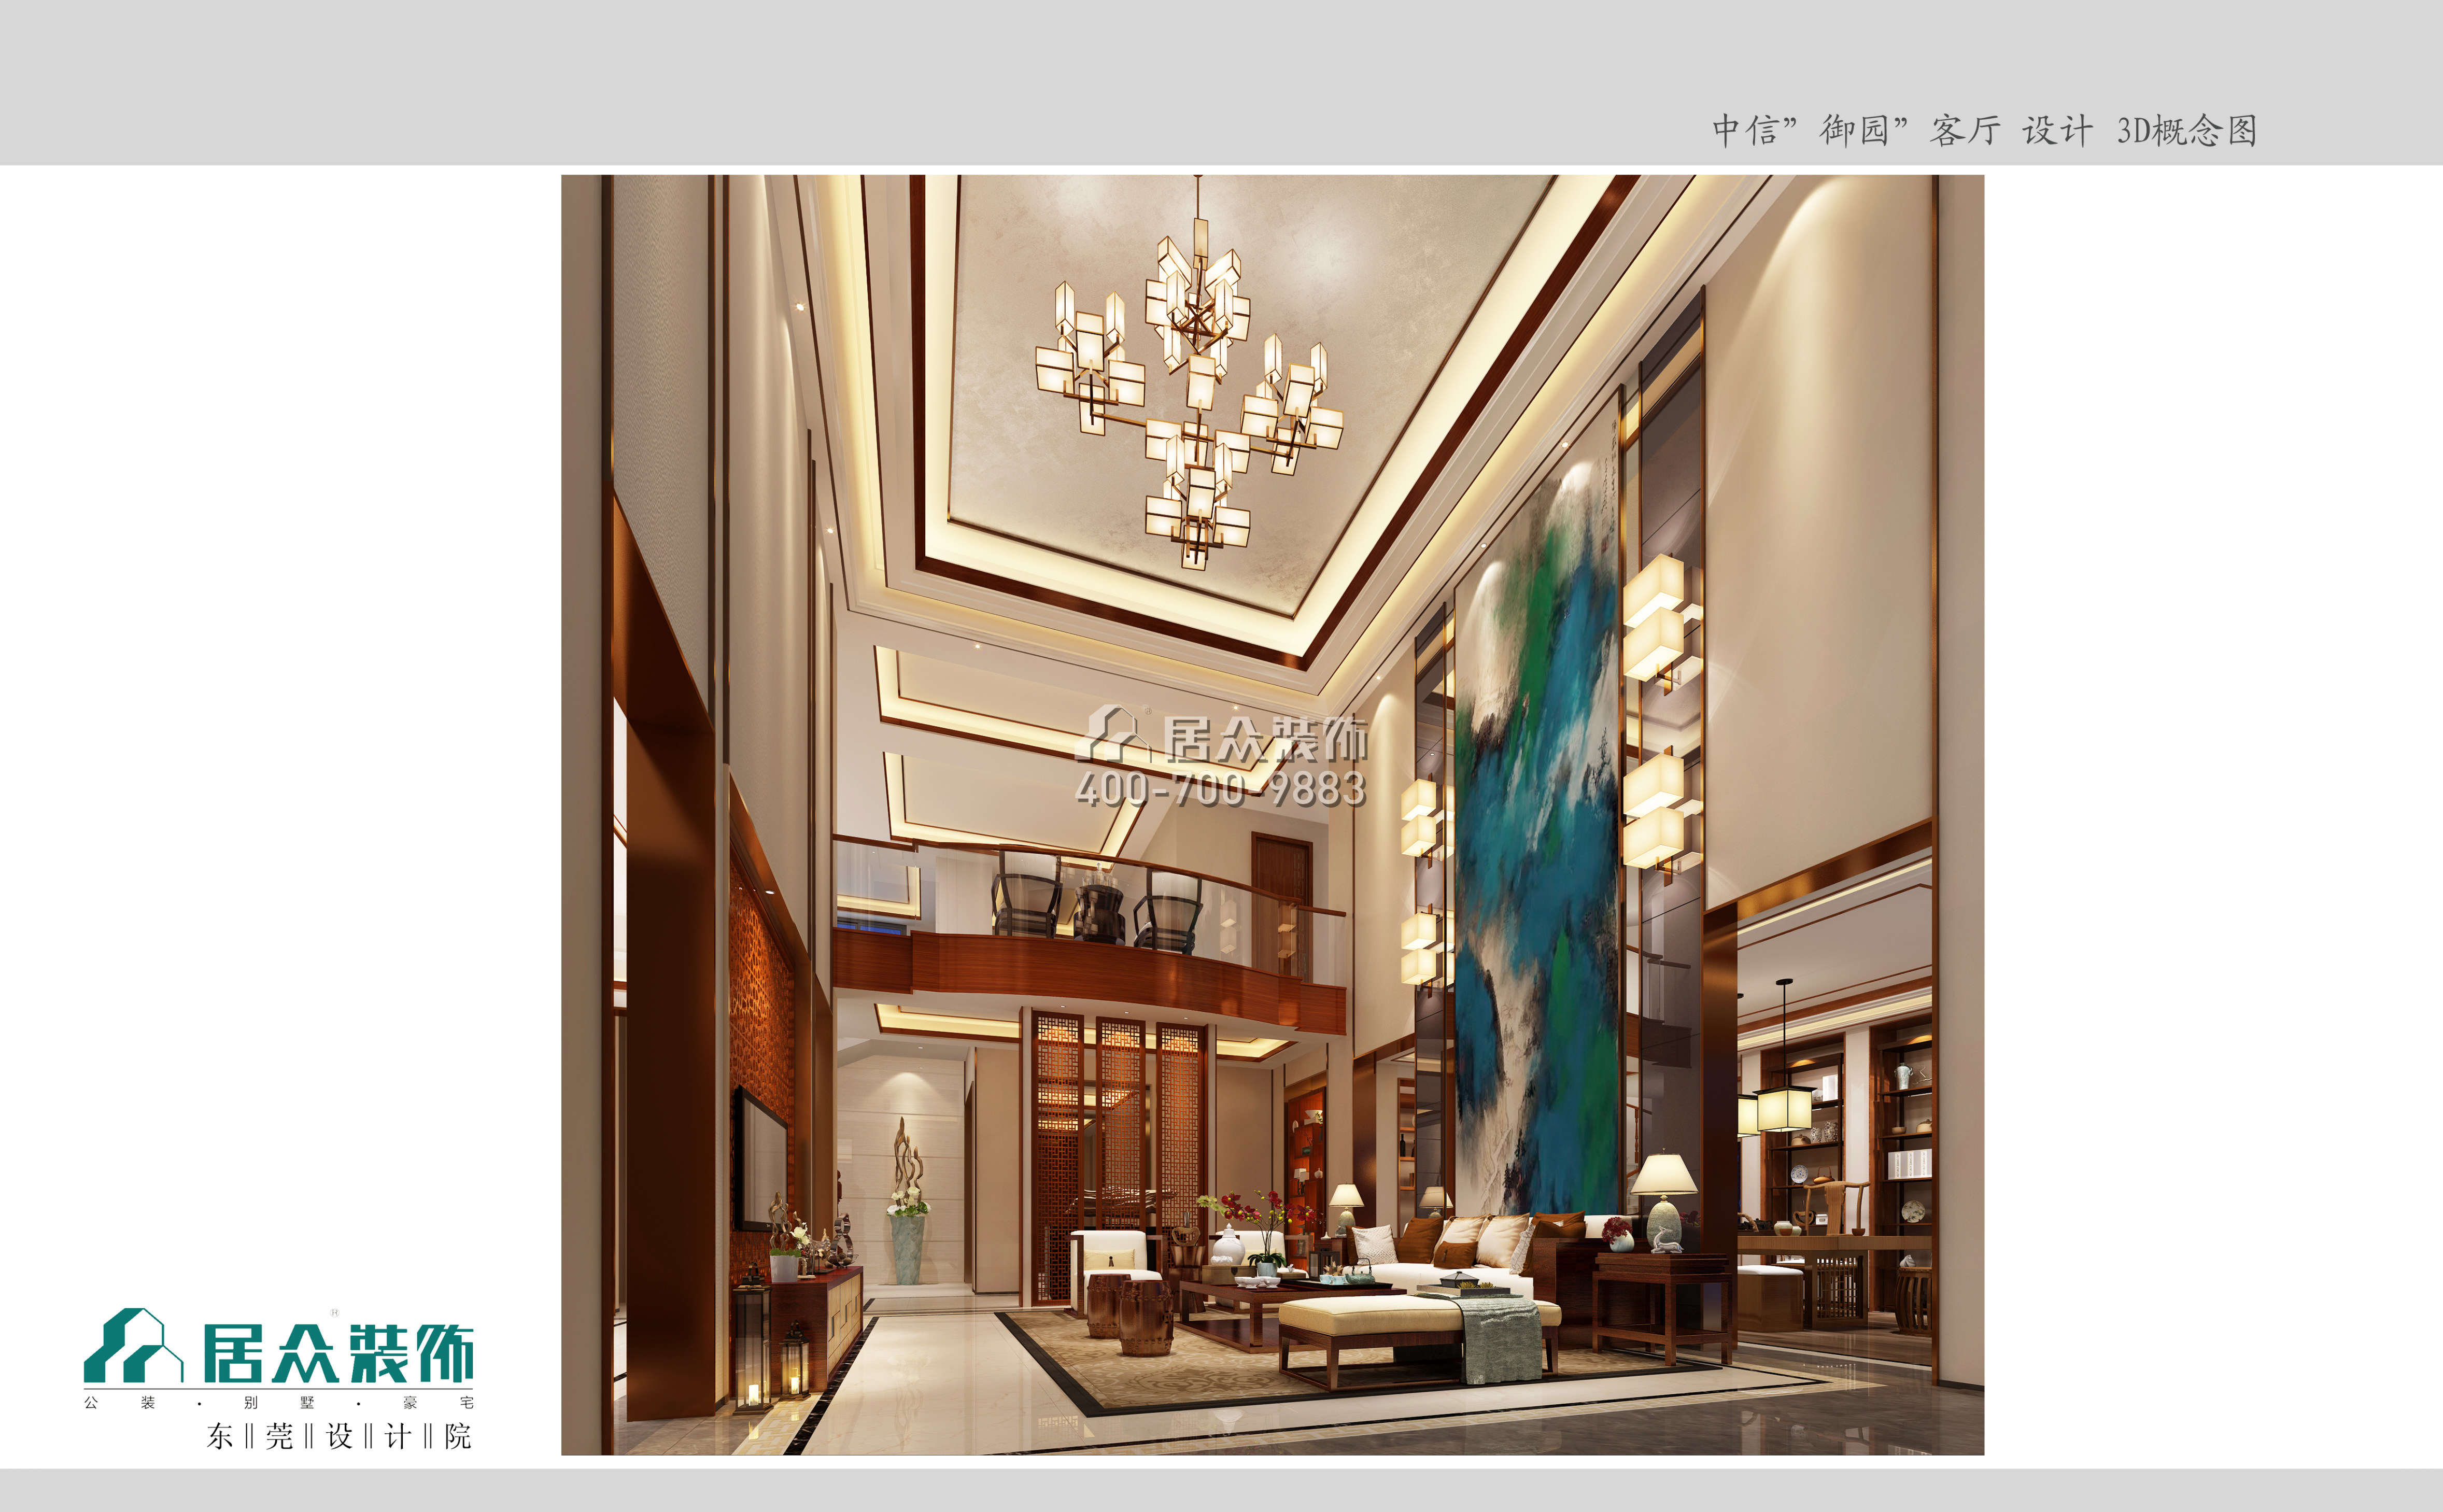 中信御园800平方米中式风格别墅户型客厅装修效果图